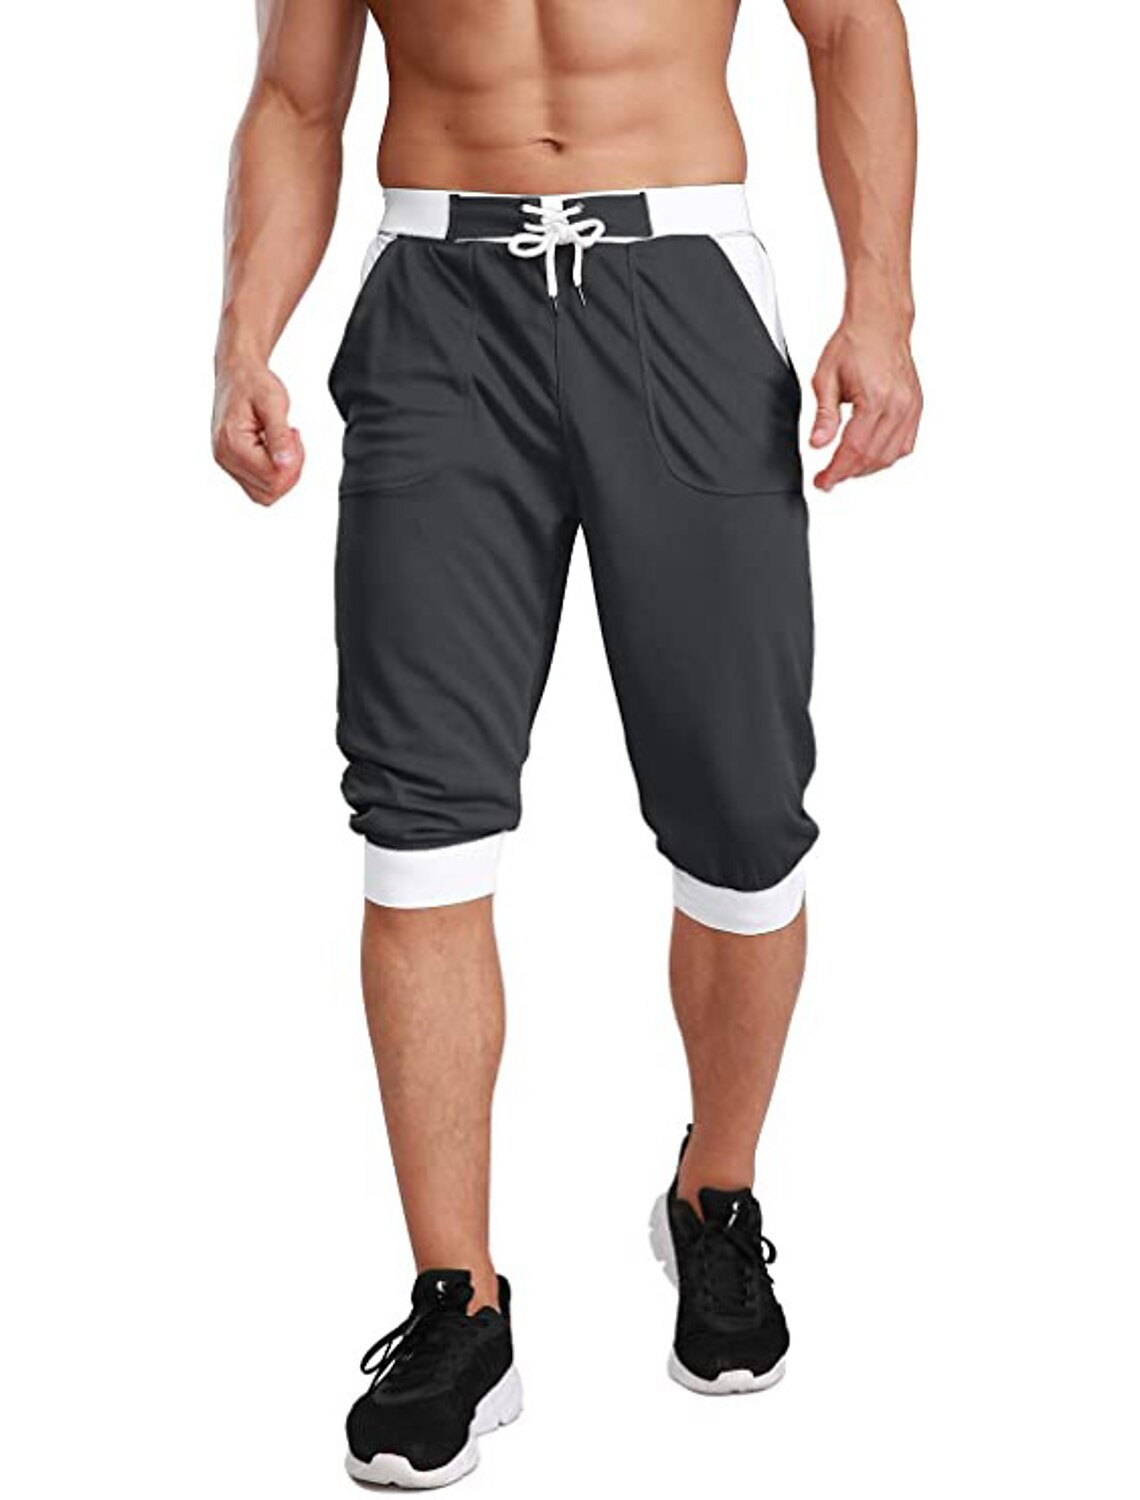 BIYLACLESEN Men's 3/4 Joggers Shorts Below Knee Running Gym Capri Pants Zipper Pockets 